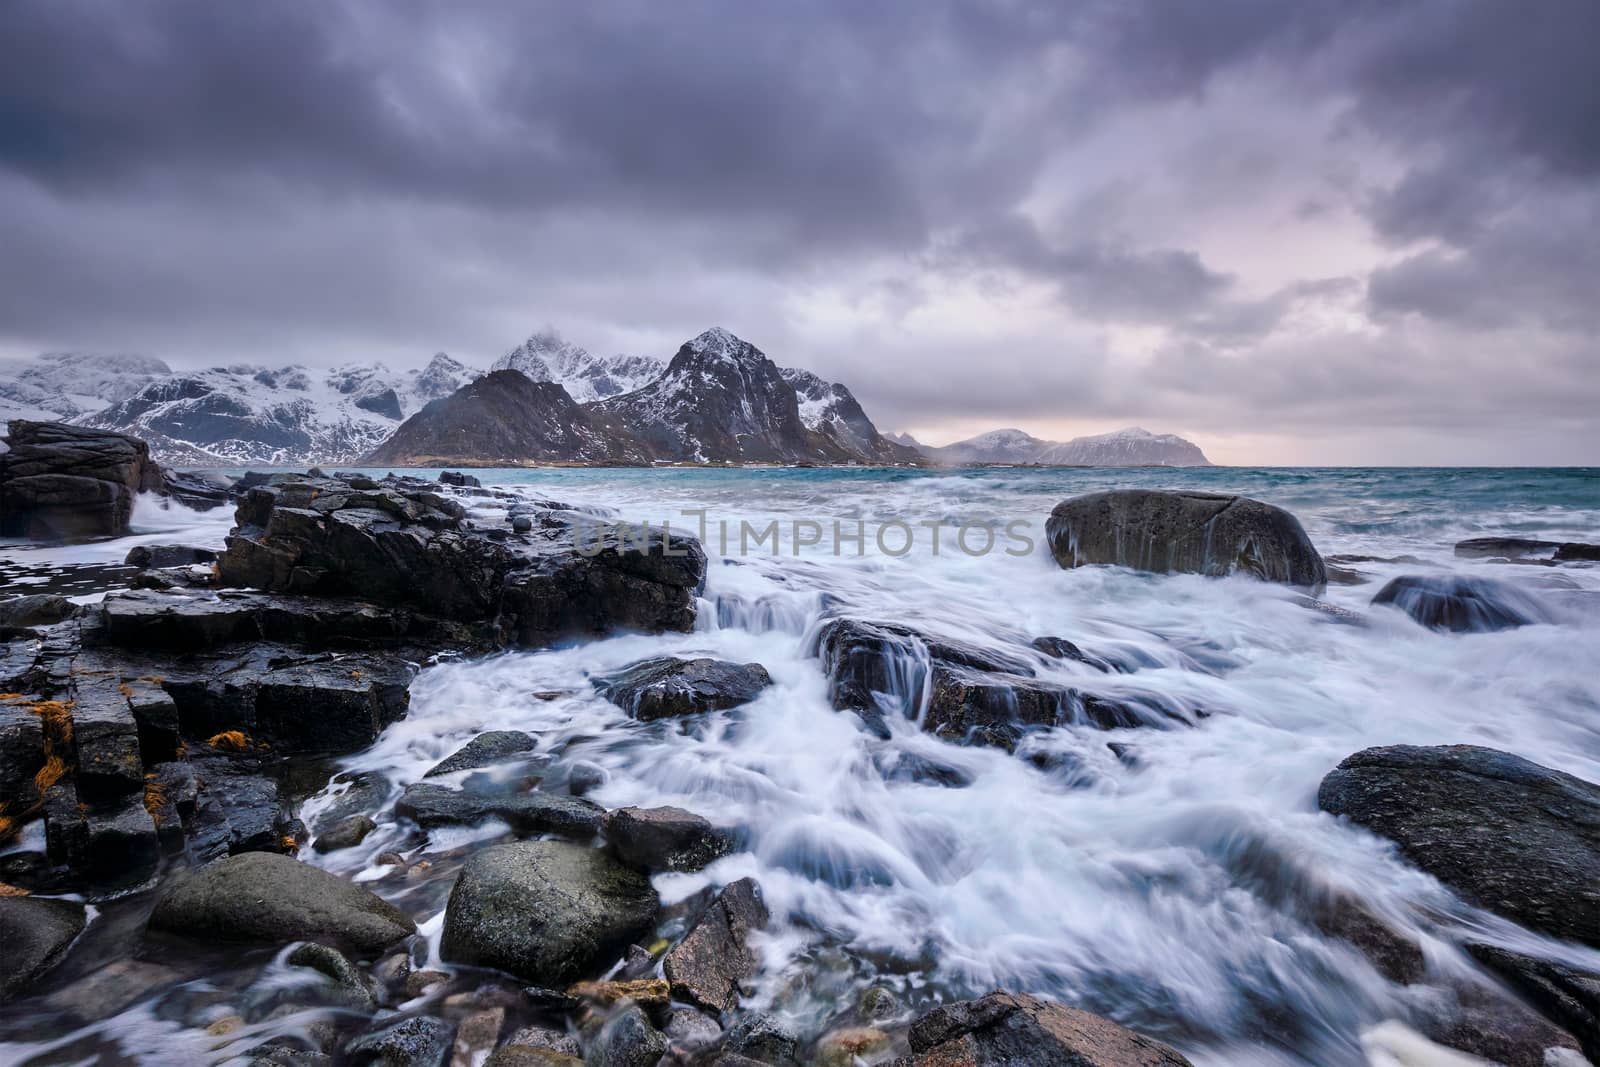 Rocky coast of fjord of Norwegian sea in winter. Vareid, Lofoten islands, Norway